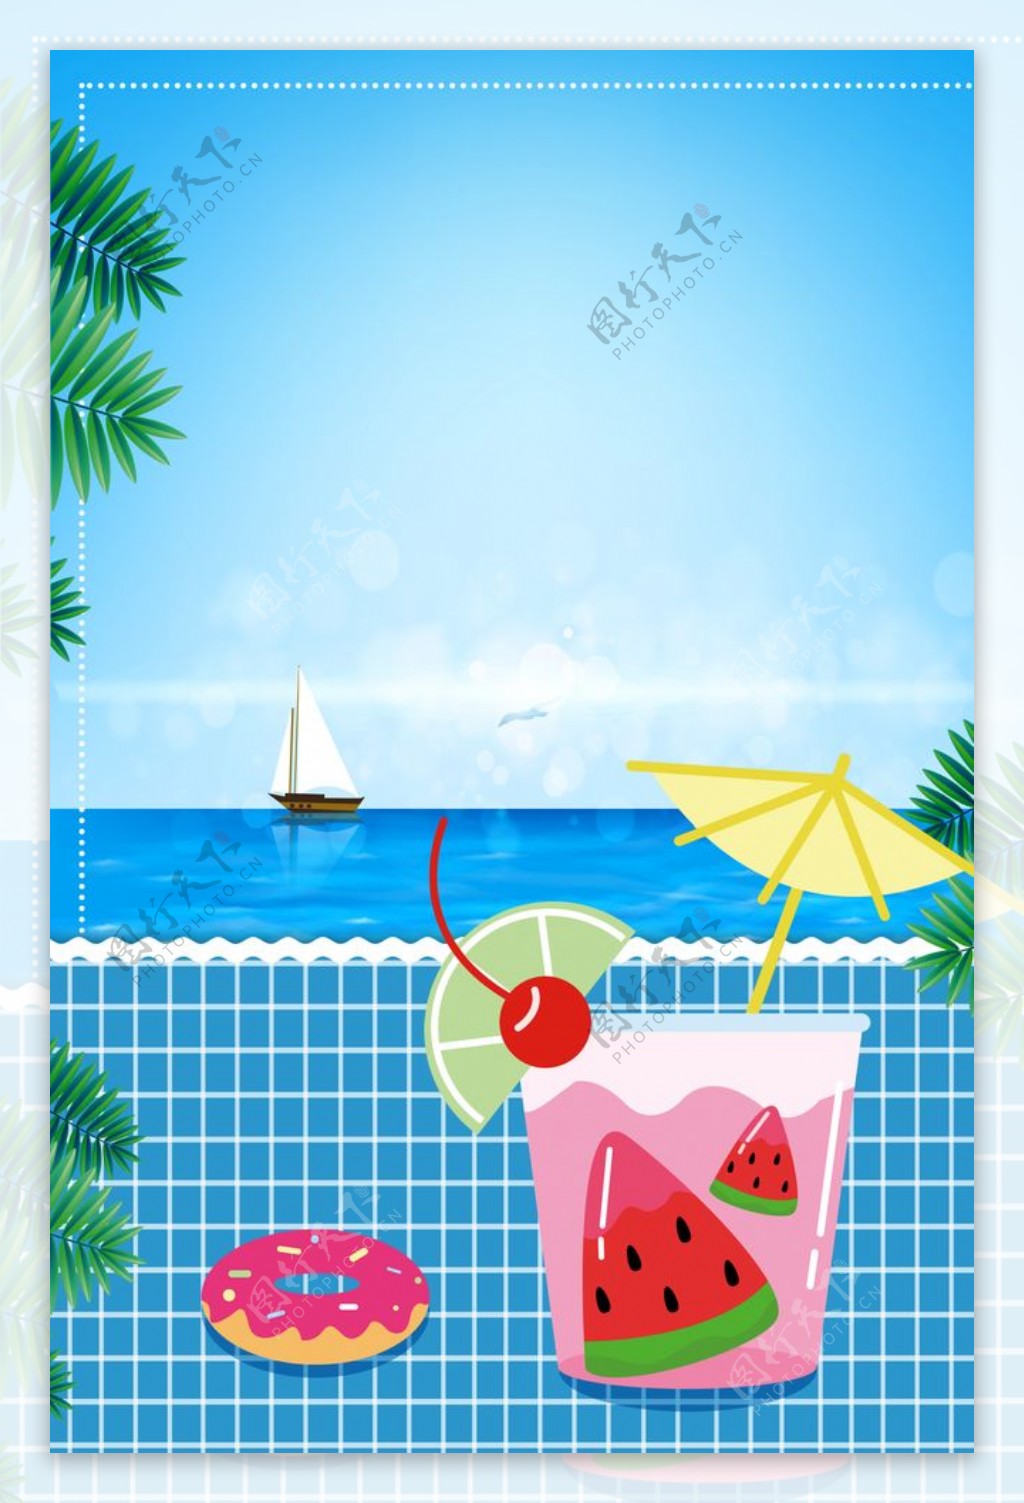 夏季水果饮料促销海报